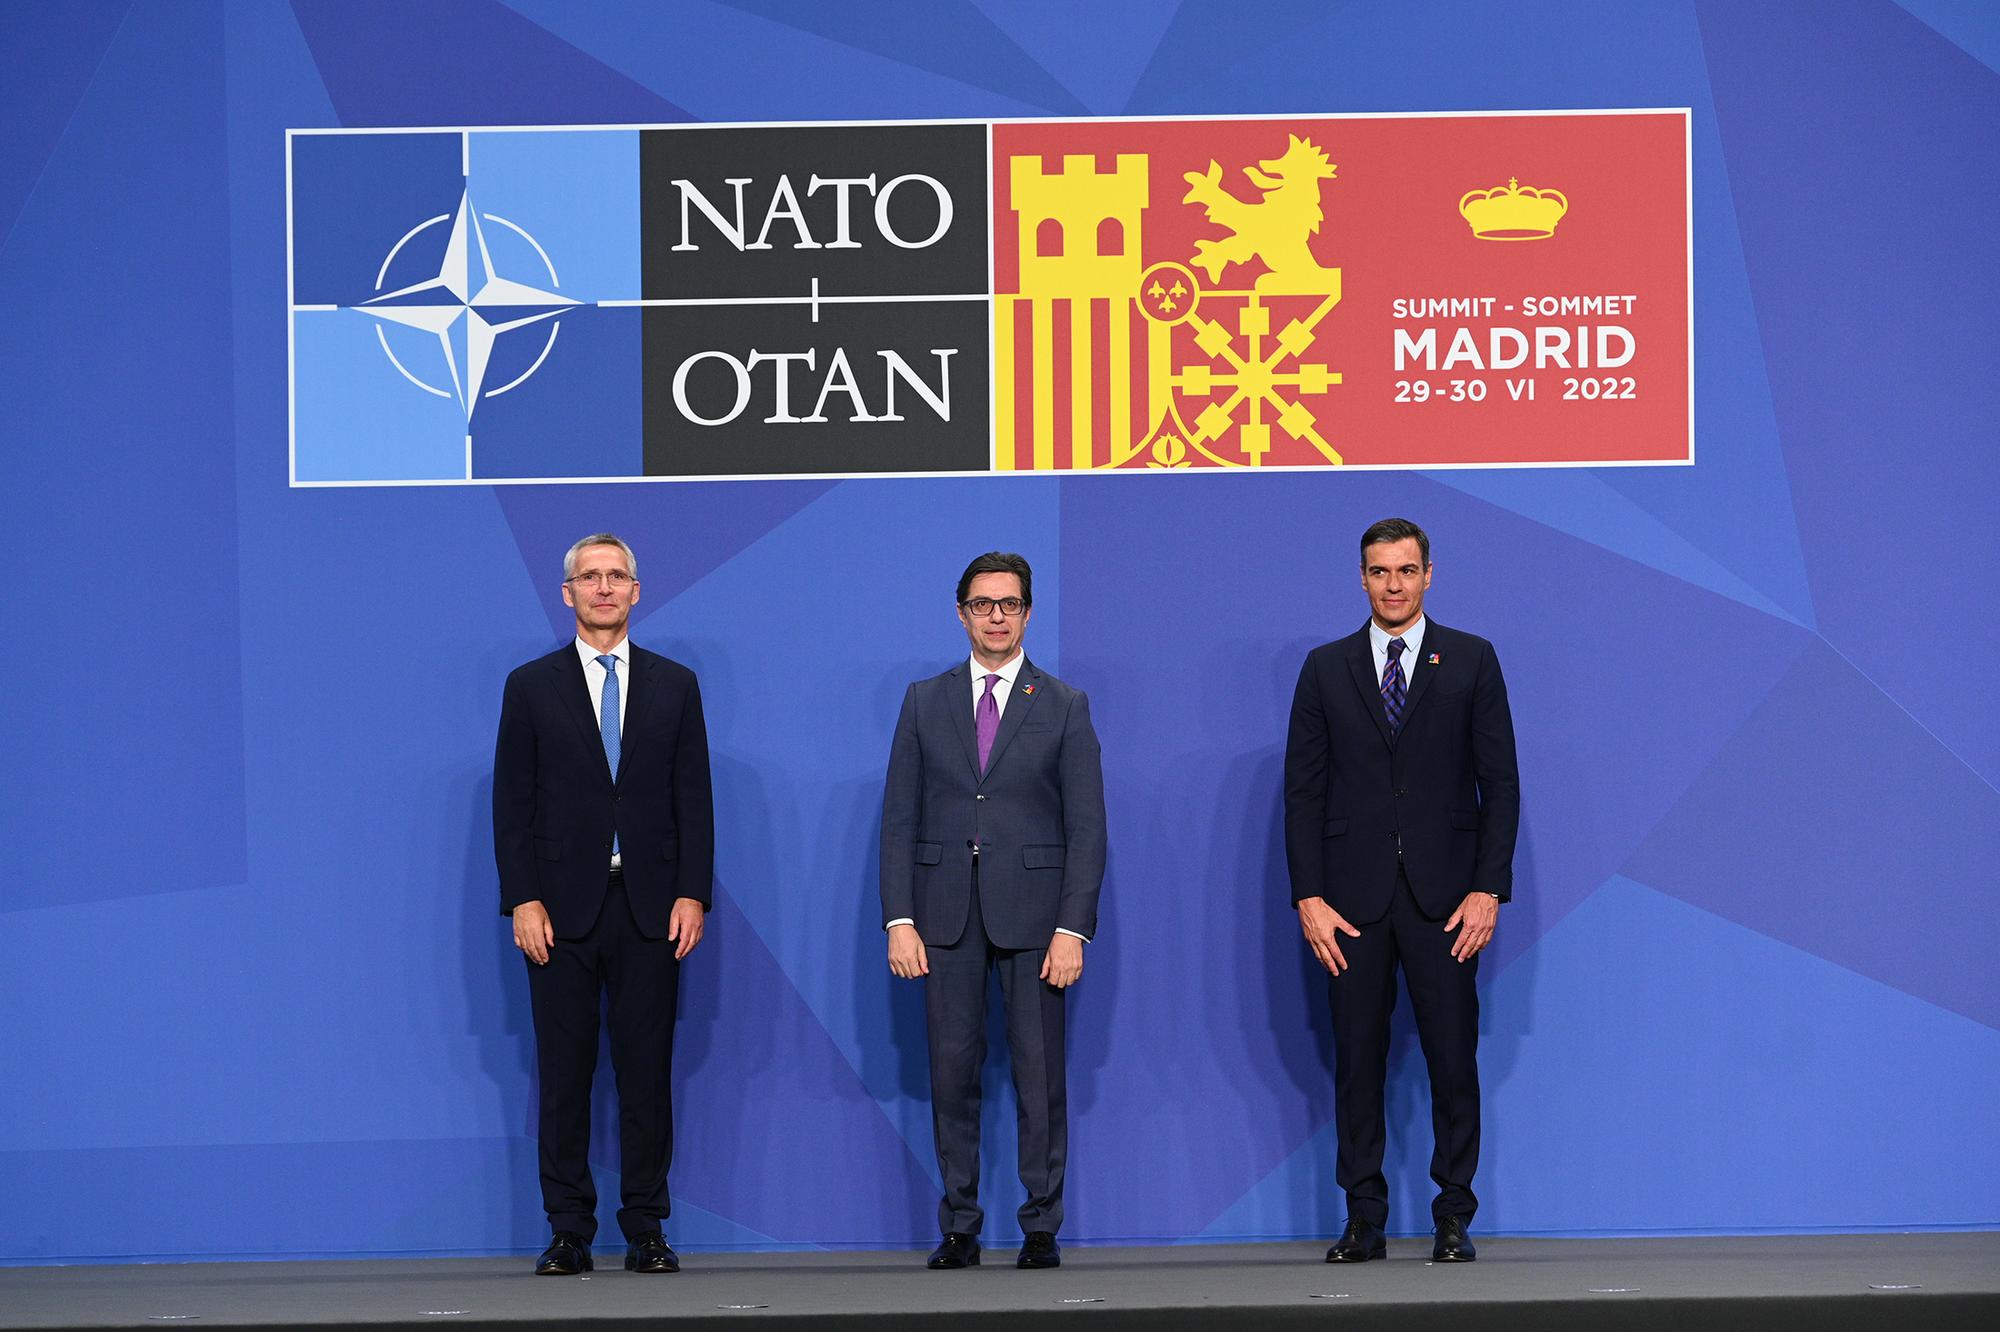 Mateusz Morawiecki Polonia -Cumbre de la OTAN Madrid 2022